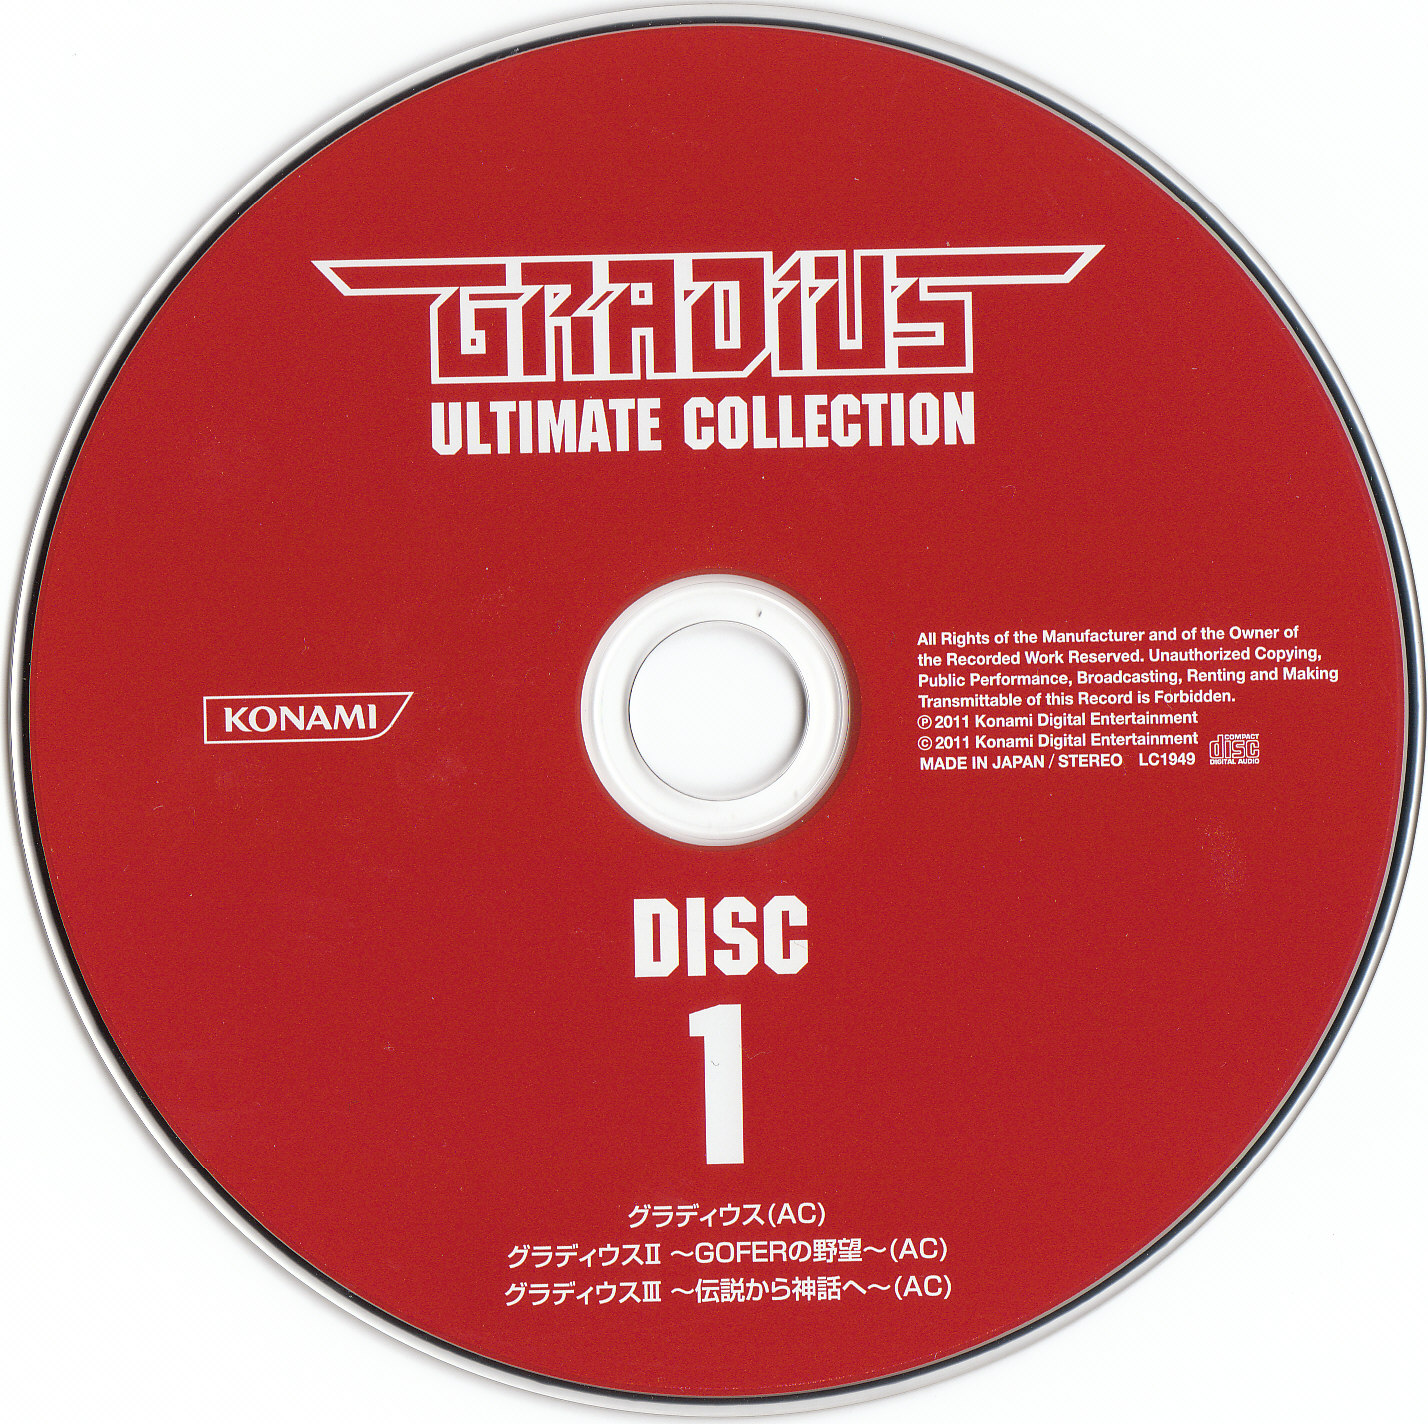 【即納大人気】CD GRADIUS ULTIMATE COLLECTION コナミ 送料無料 ゲーム一般